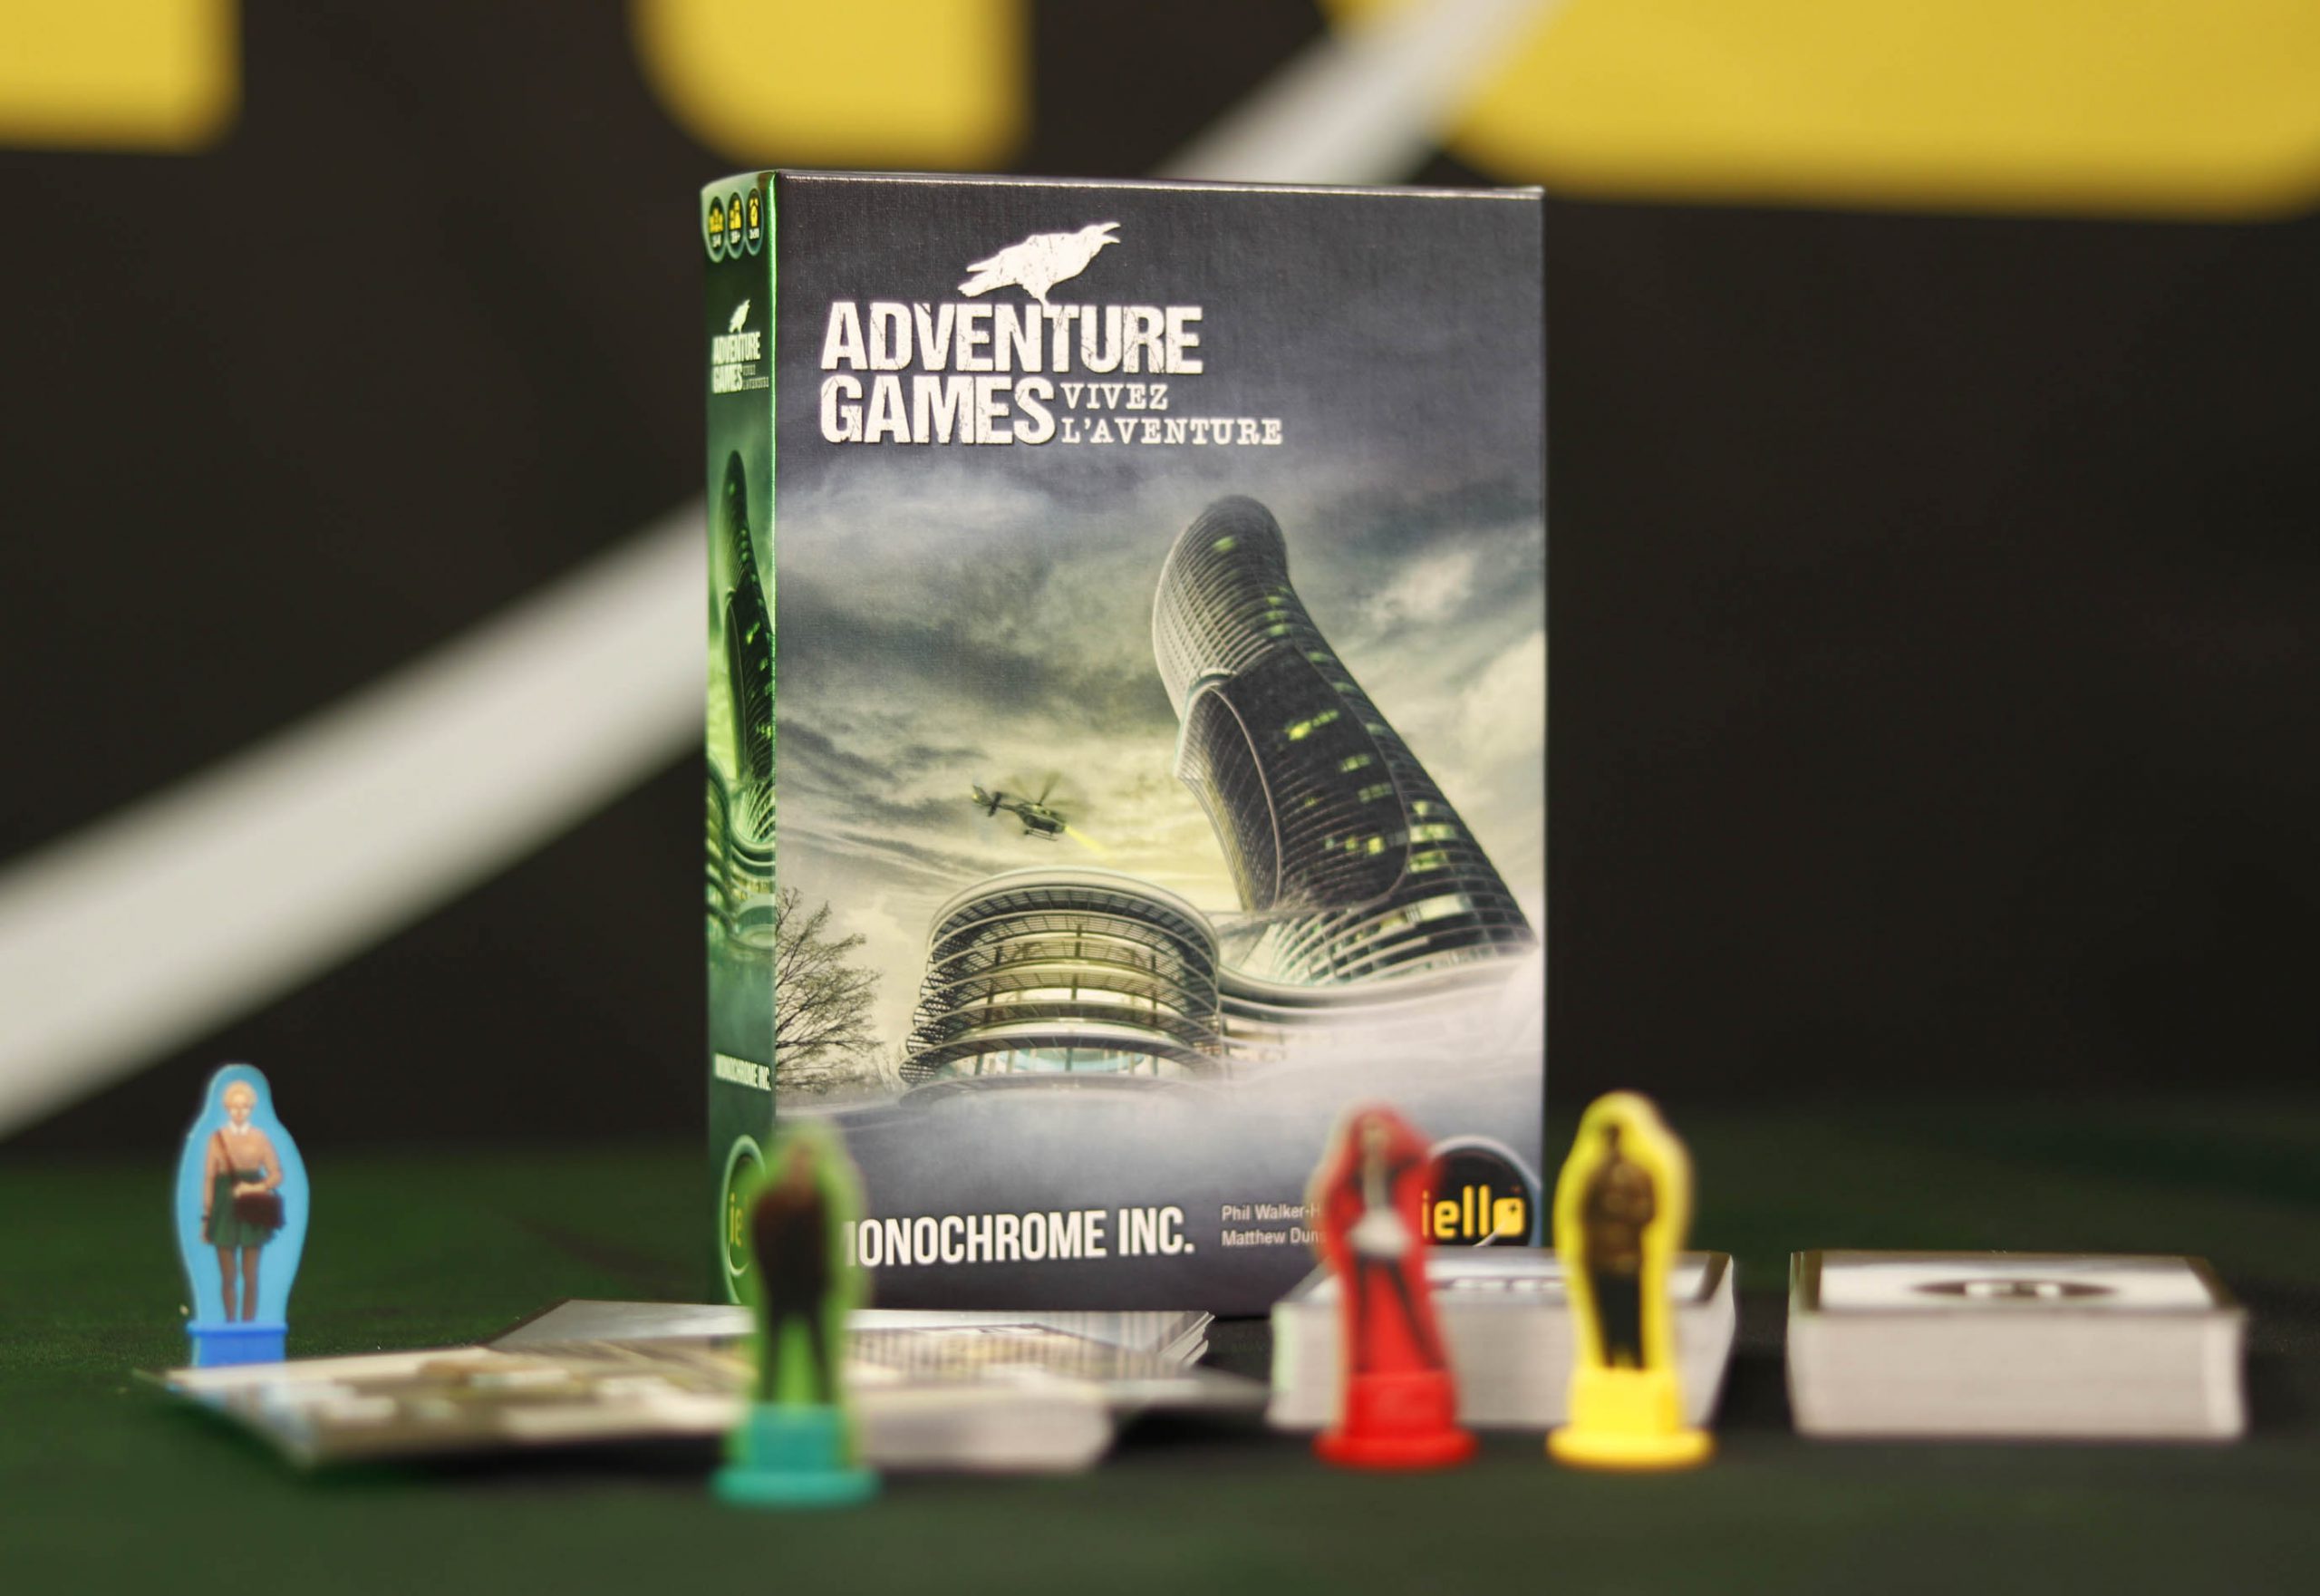 Adventure Game - Monochrome